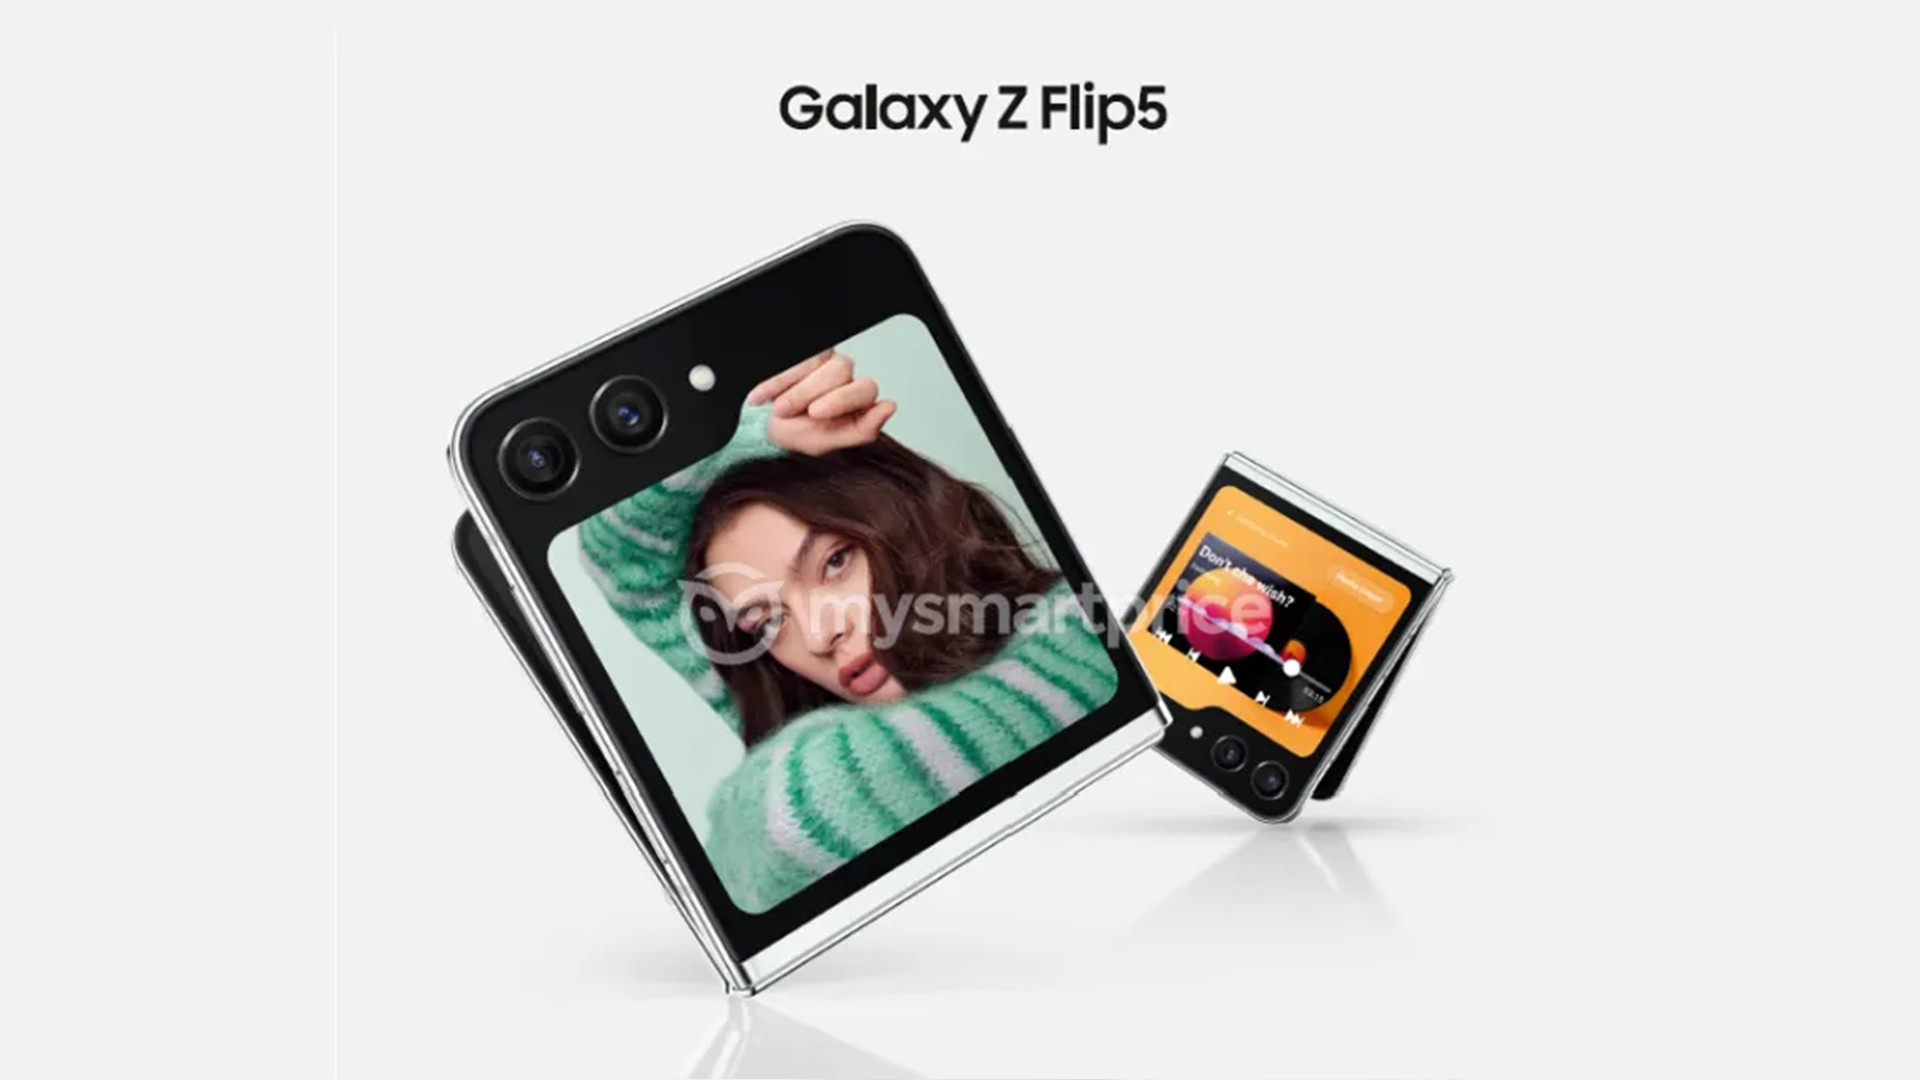 Leaked render of a Galaxy Z Flip5